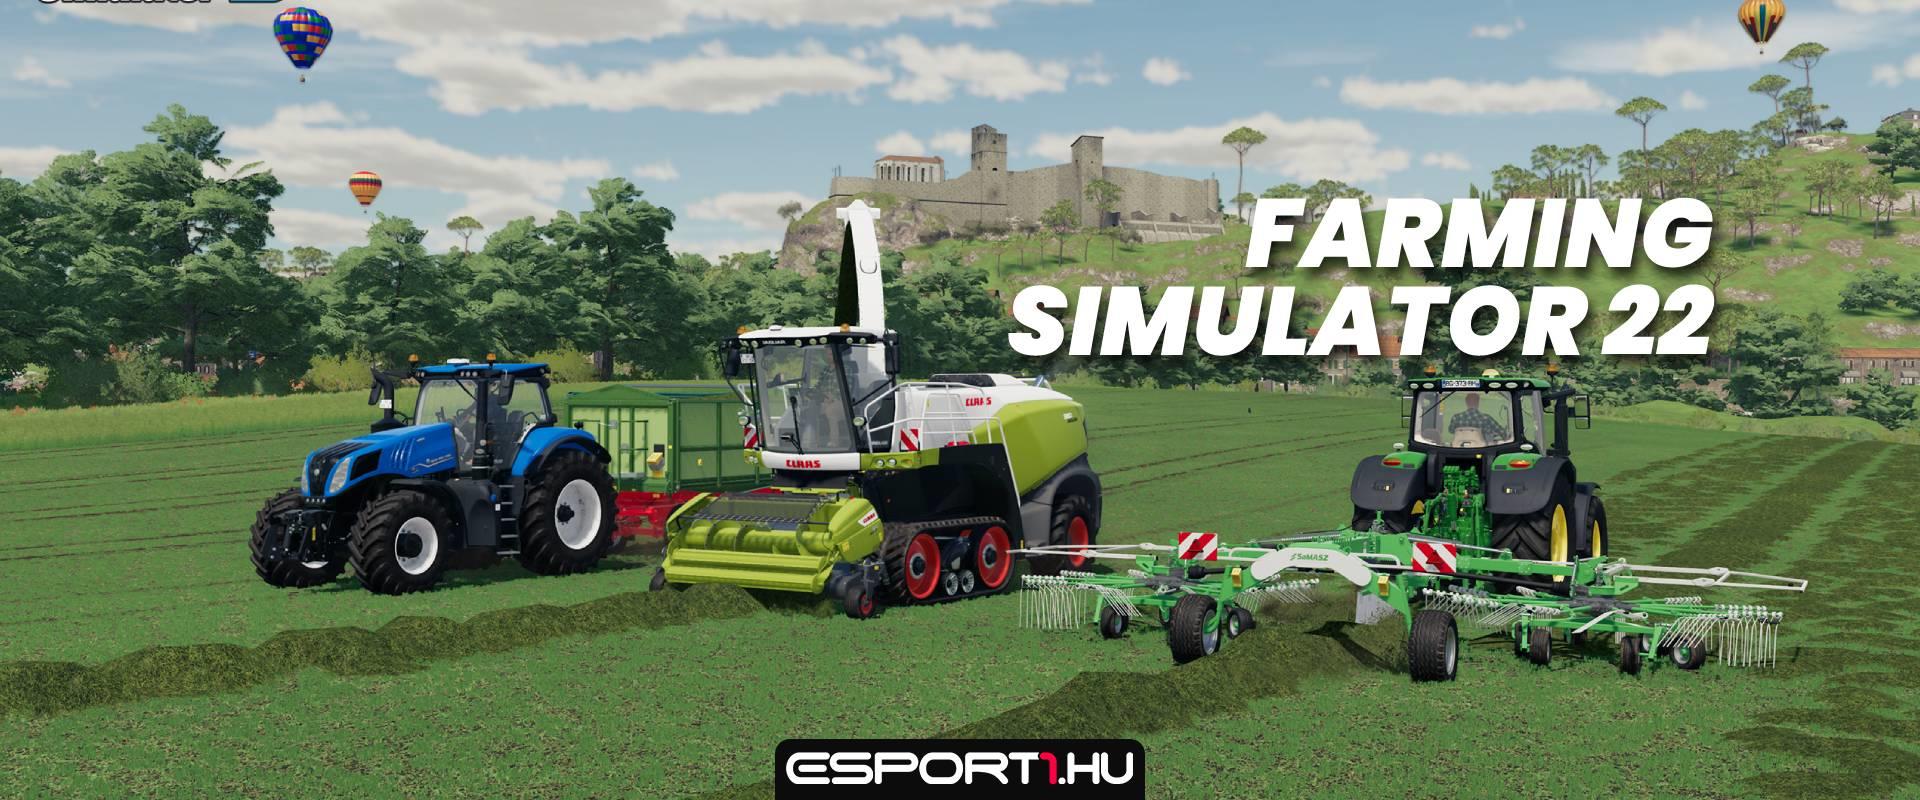 Munka után jöhet egy kis munka? - Farming Simulator 22 teszt